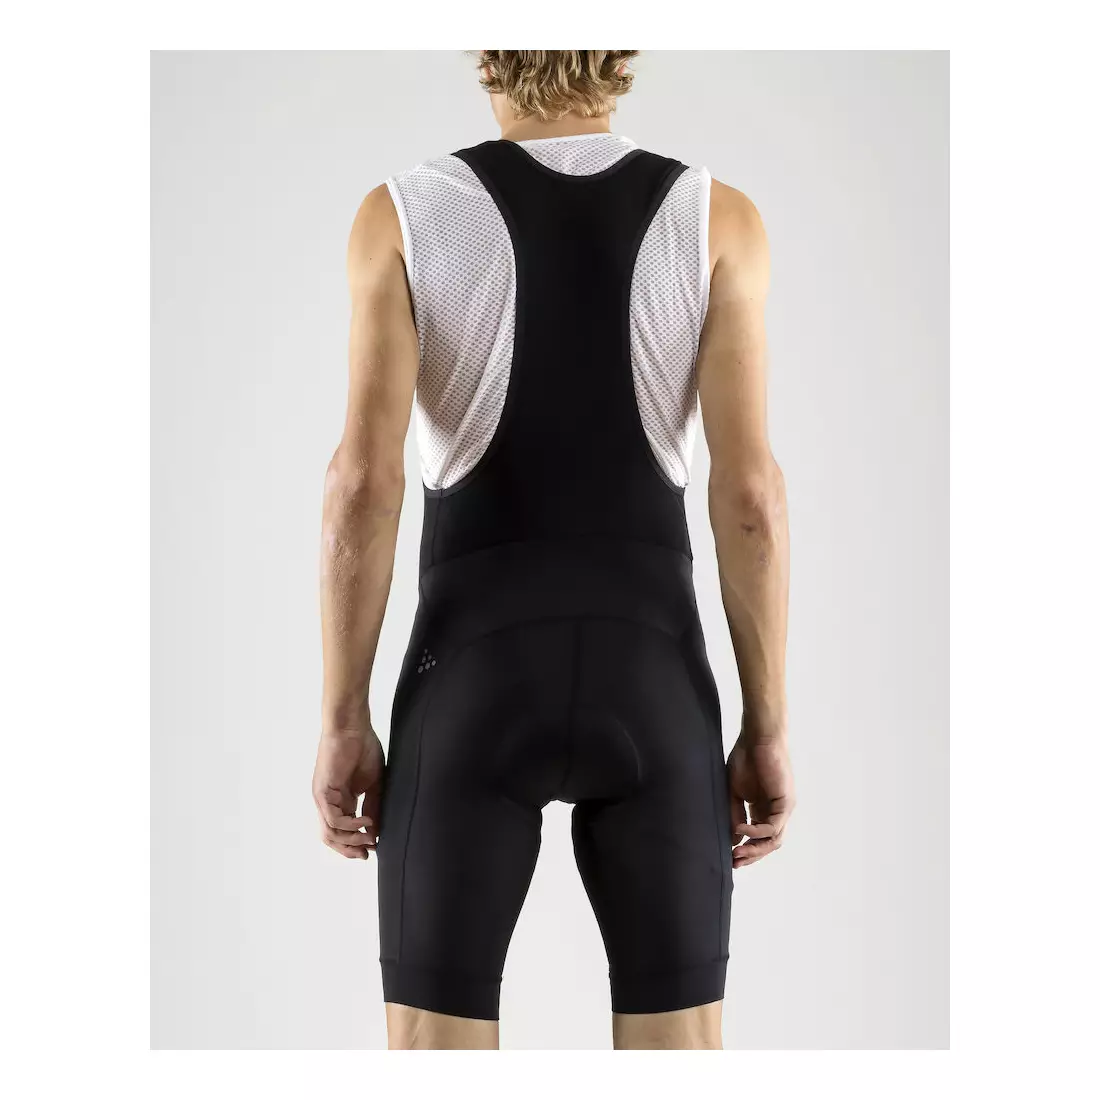 Pantaloni scurți de ciclism pentru bărbați CRAFT RISE, salopete, negru, 1906099-999000